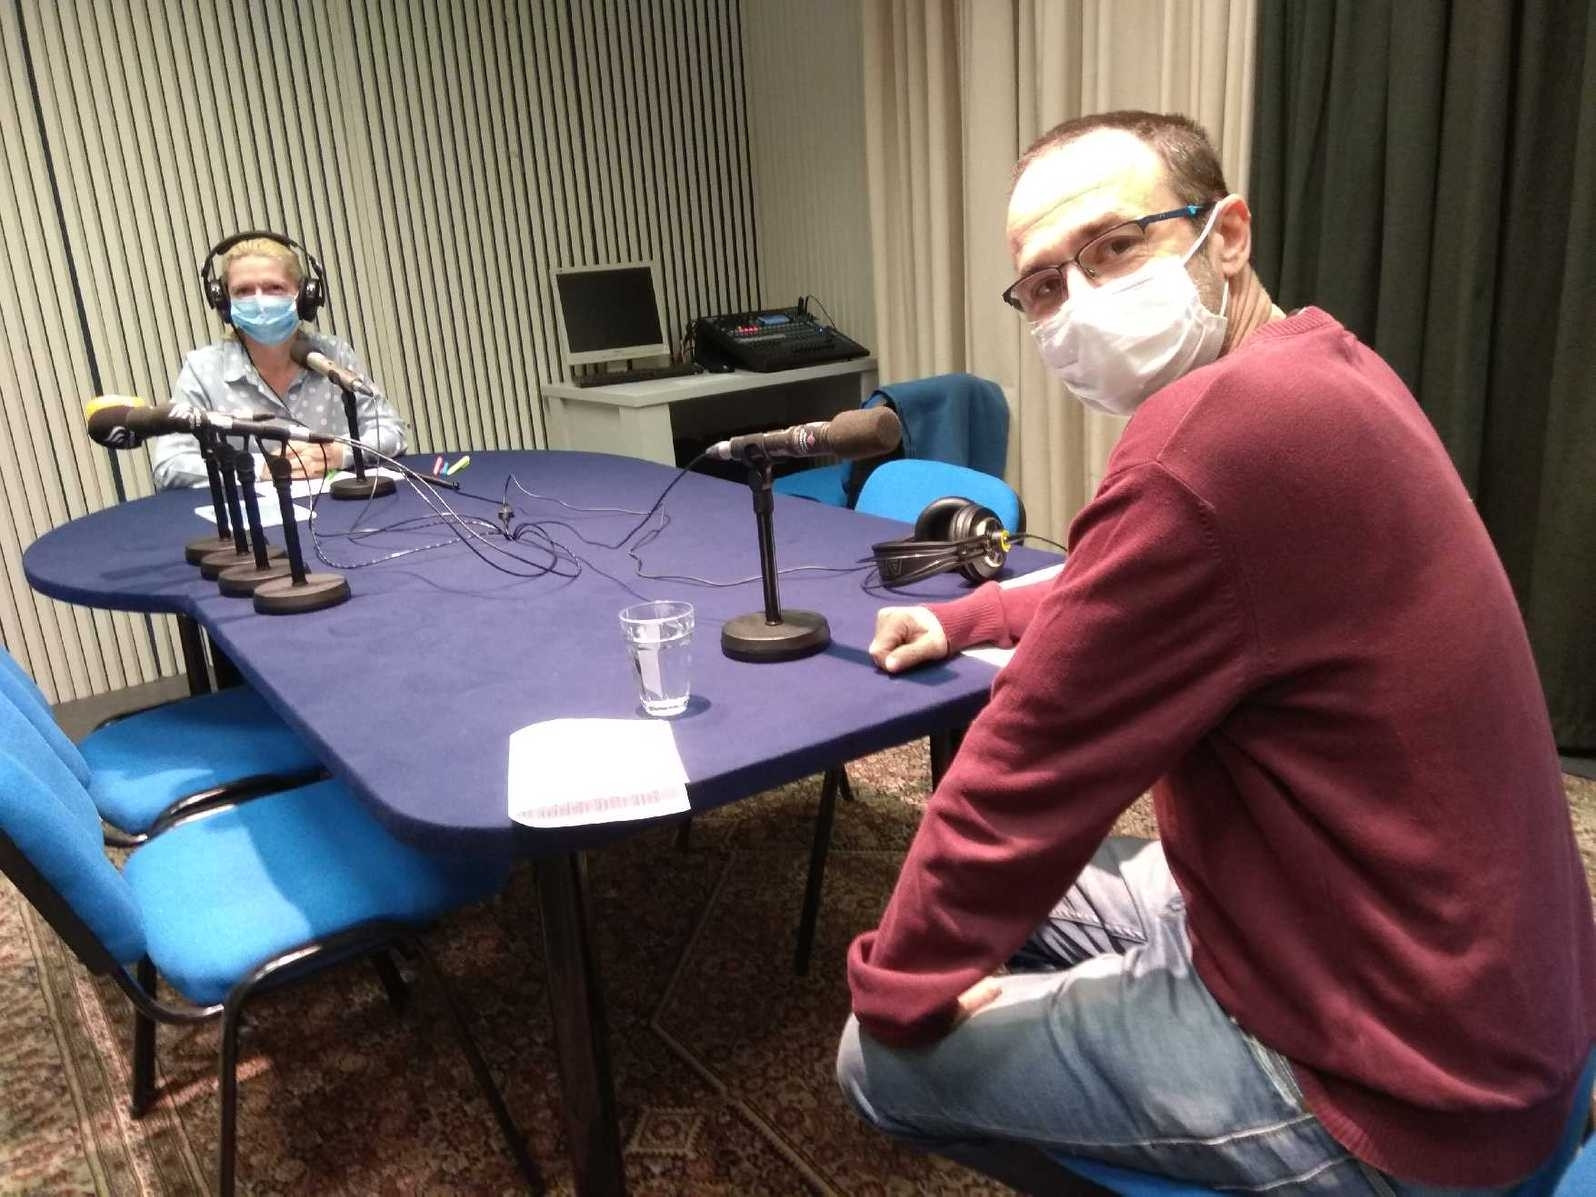 Novinarka Tanja in gost Boštjan Novak; v času pandemije pogovori z gosti potekajo iz velikega studia